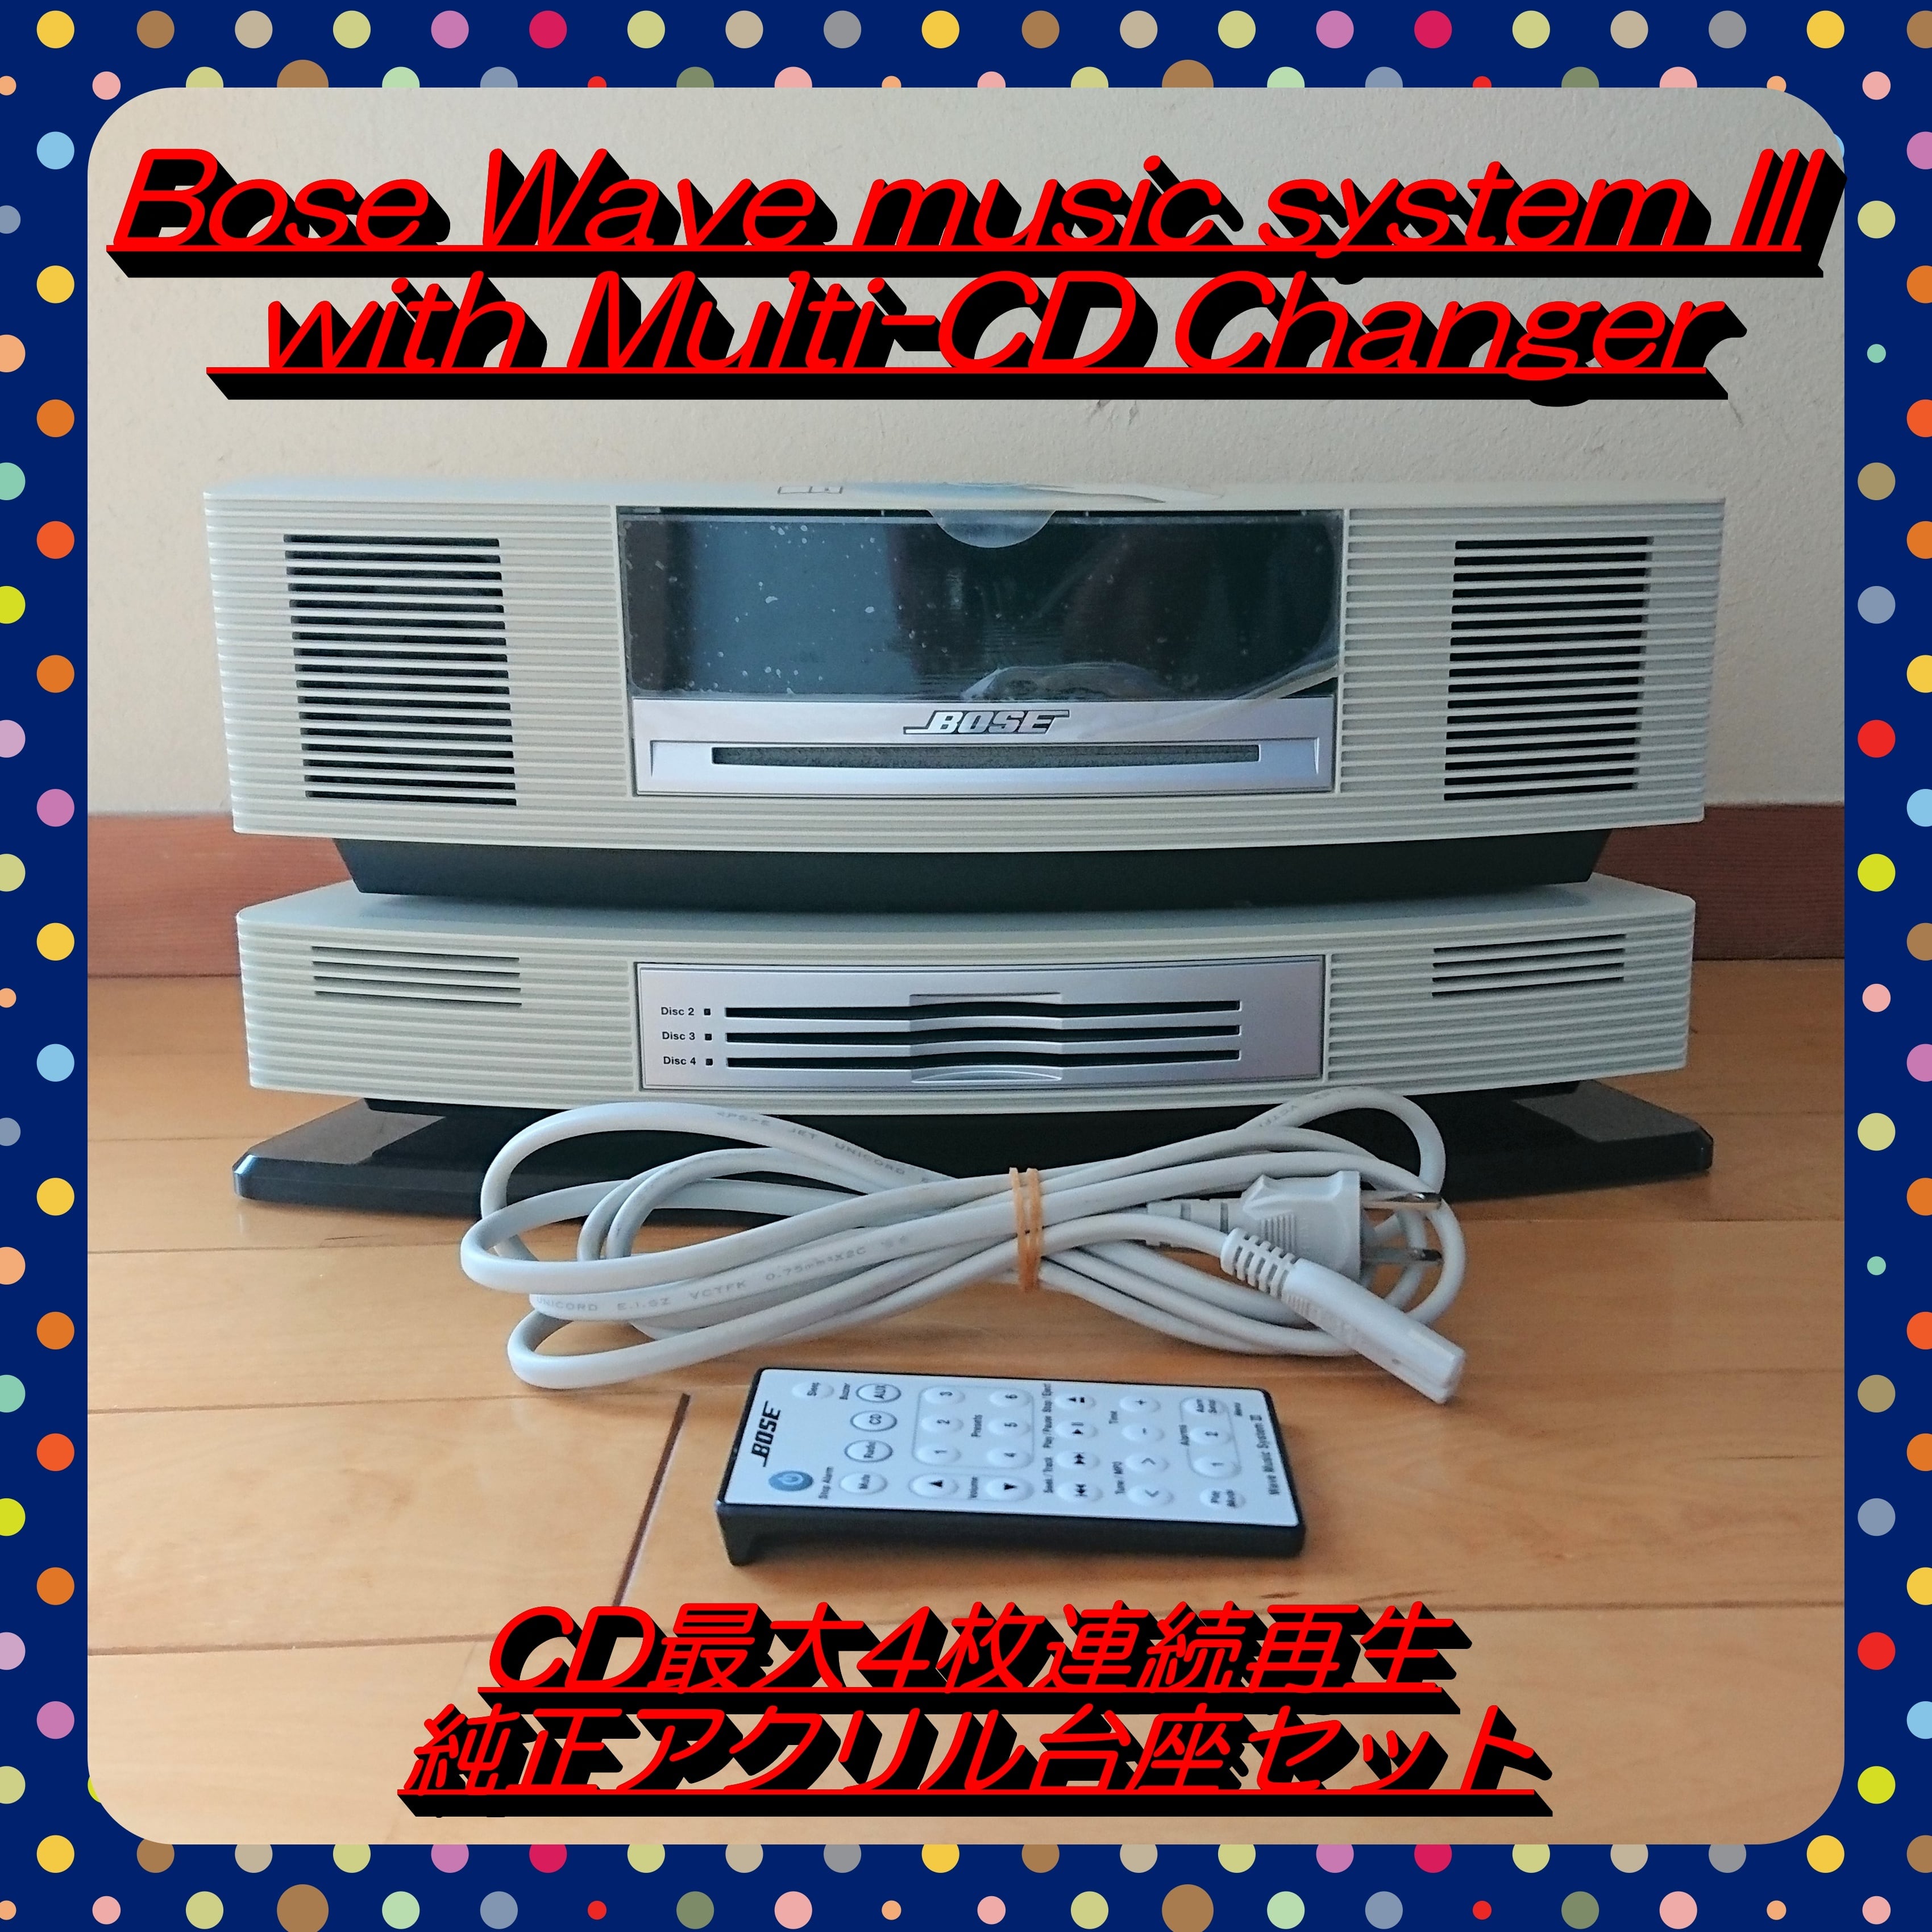 大処分特価‼】Bose Wave music system III with Multi-CD Changer ...